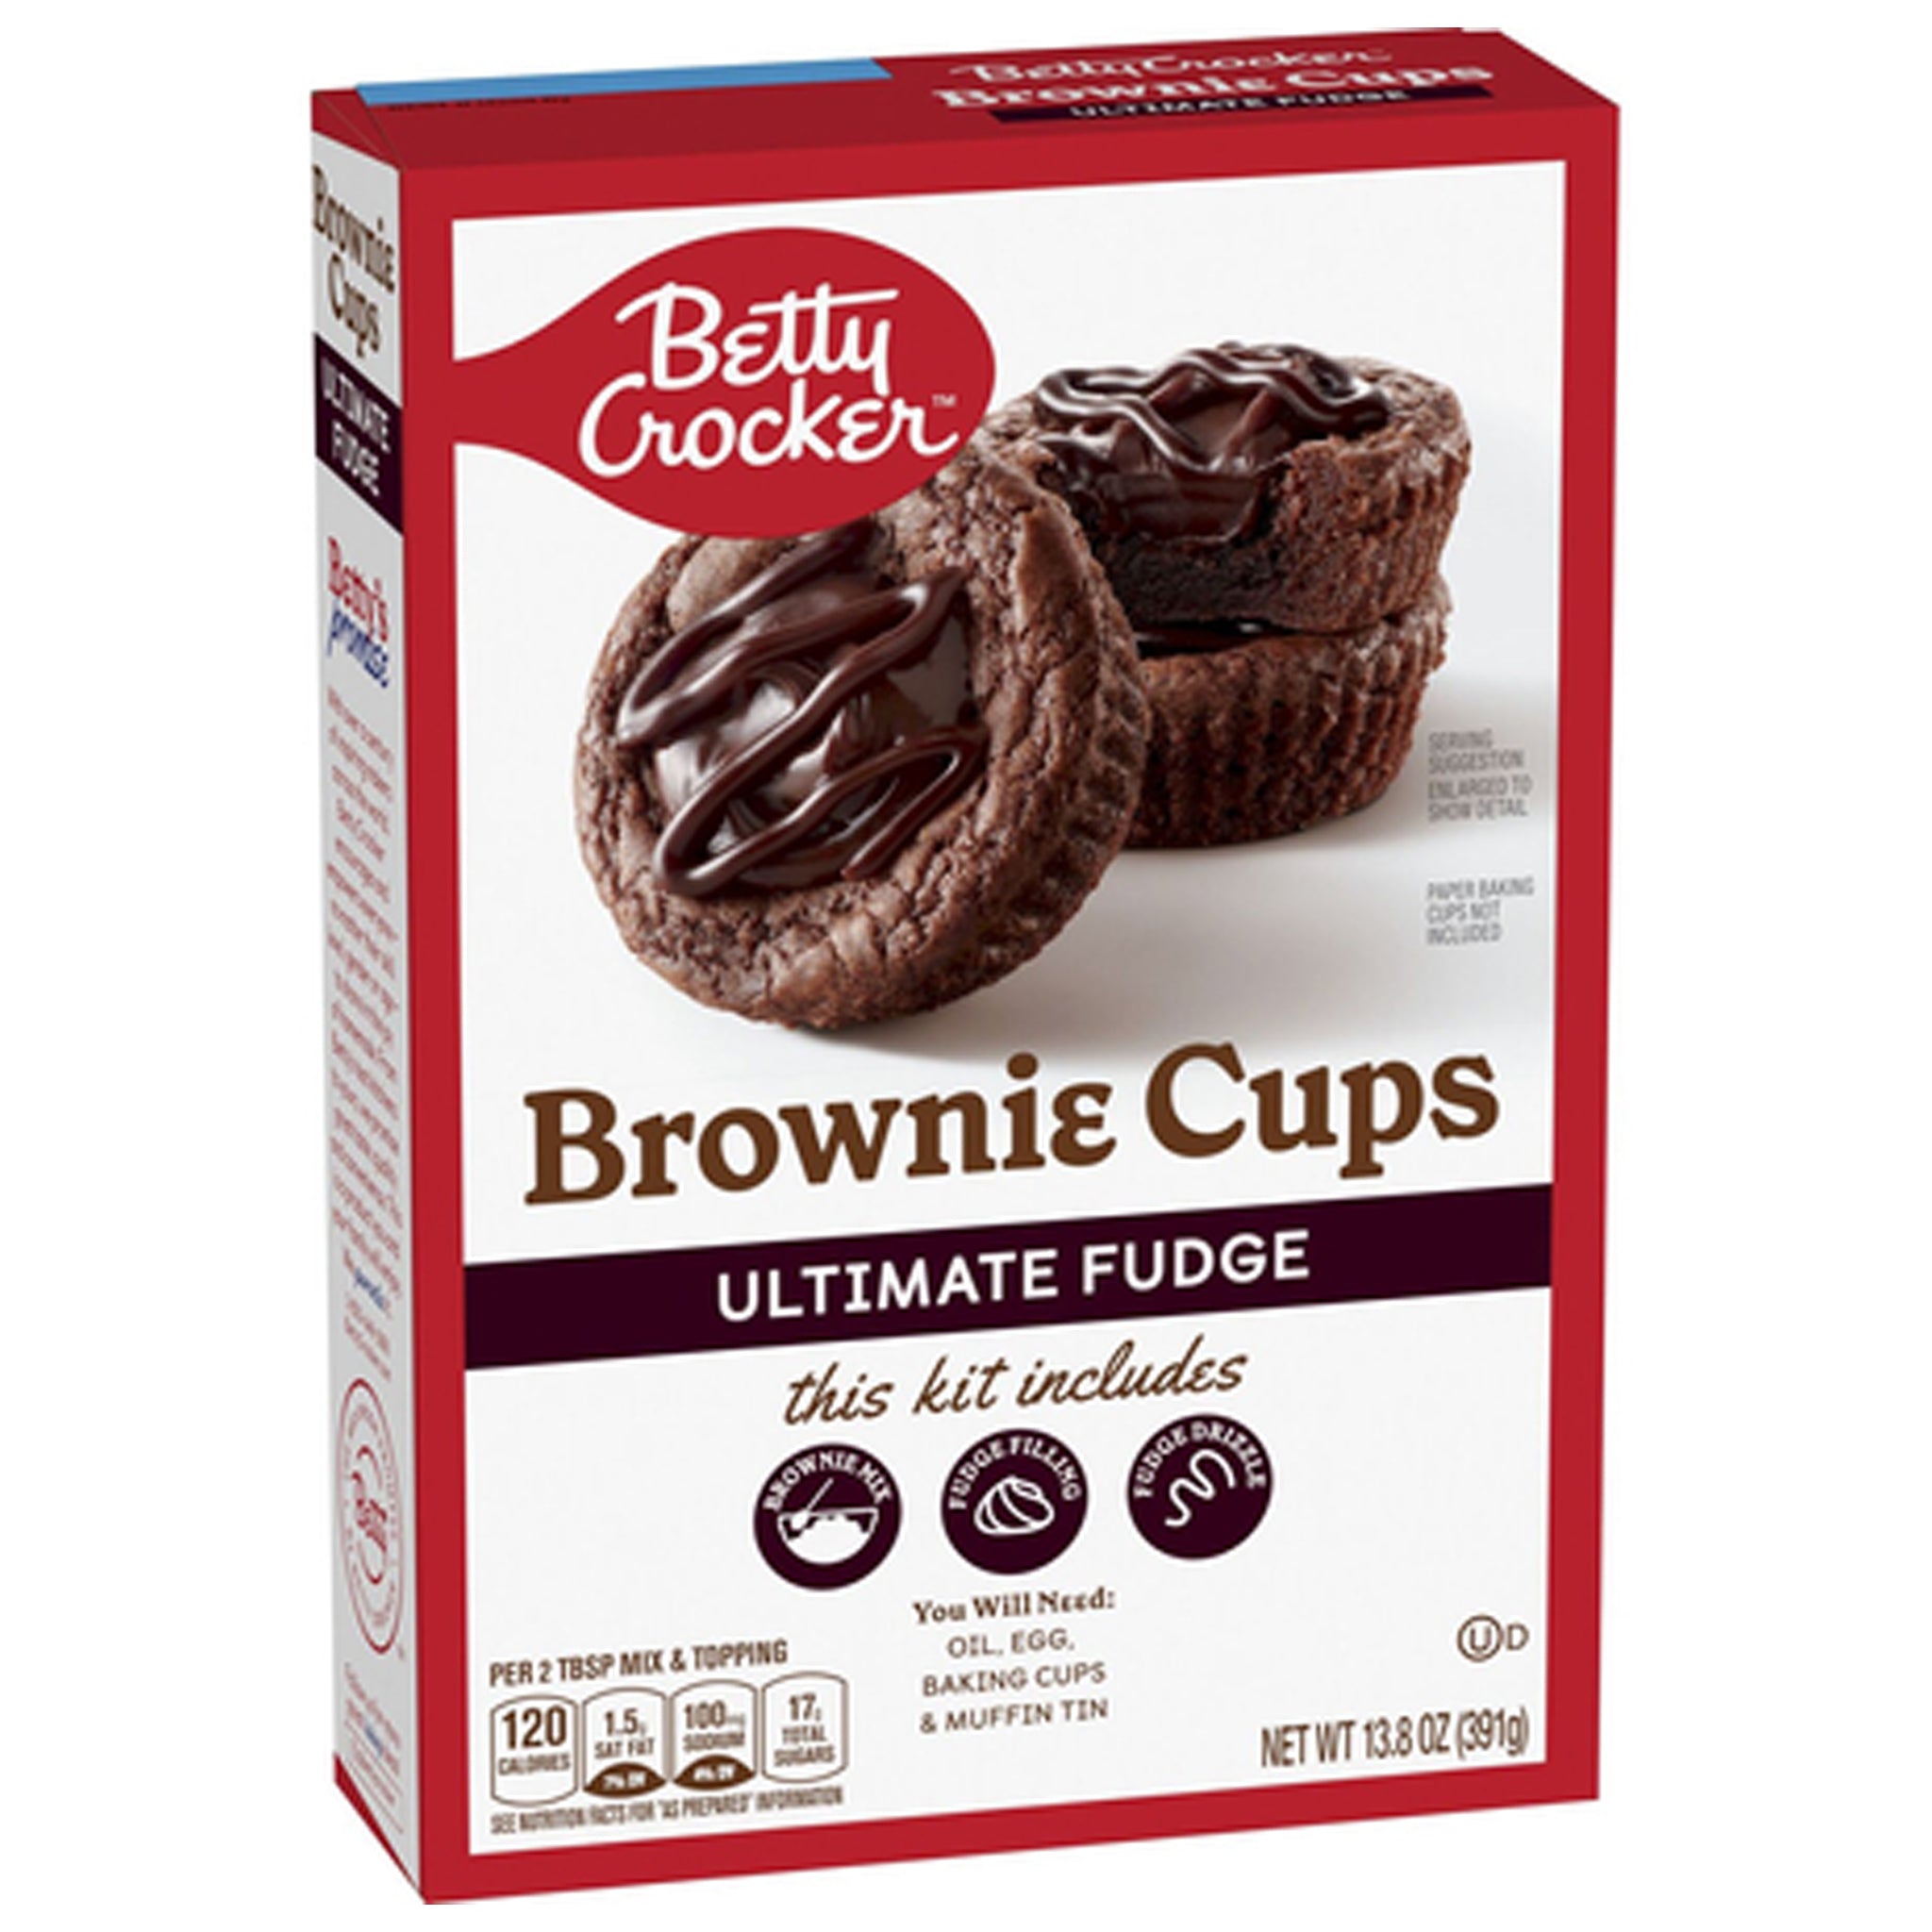 Betty Crocker Brownie Cup Fudge בטי קרוקר עיגולי פאדג שוקולד מאפין